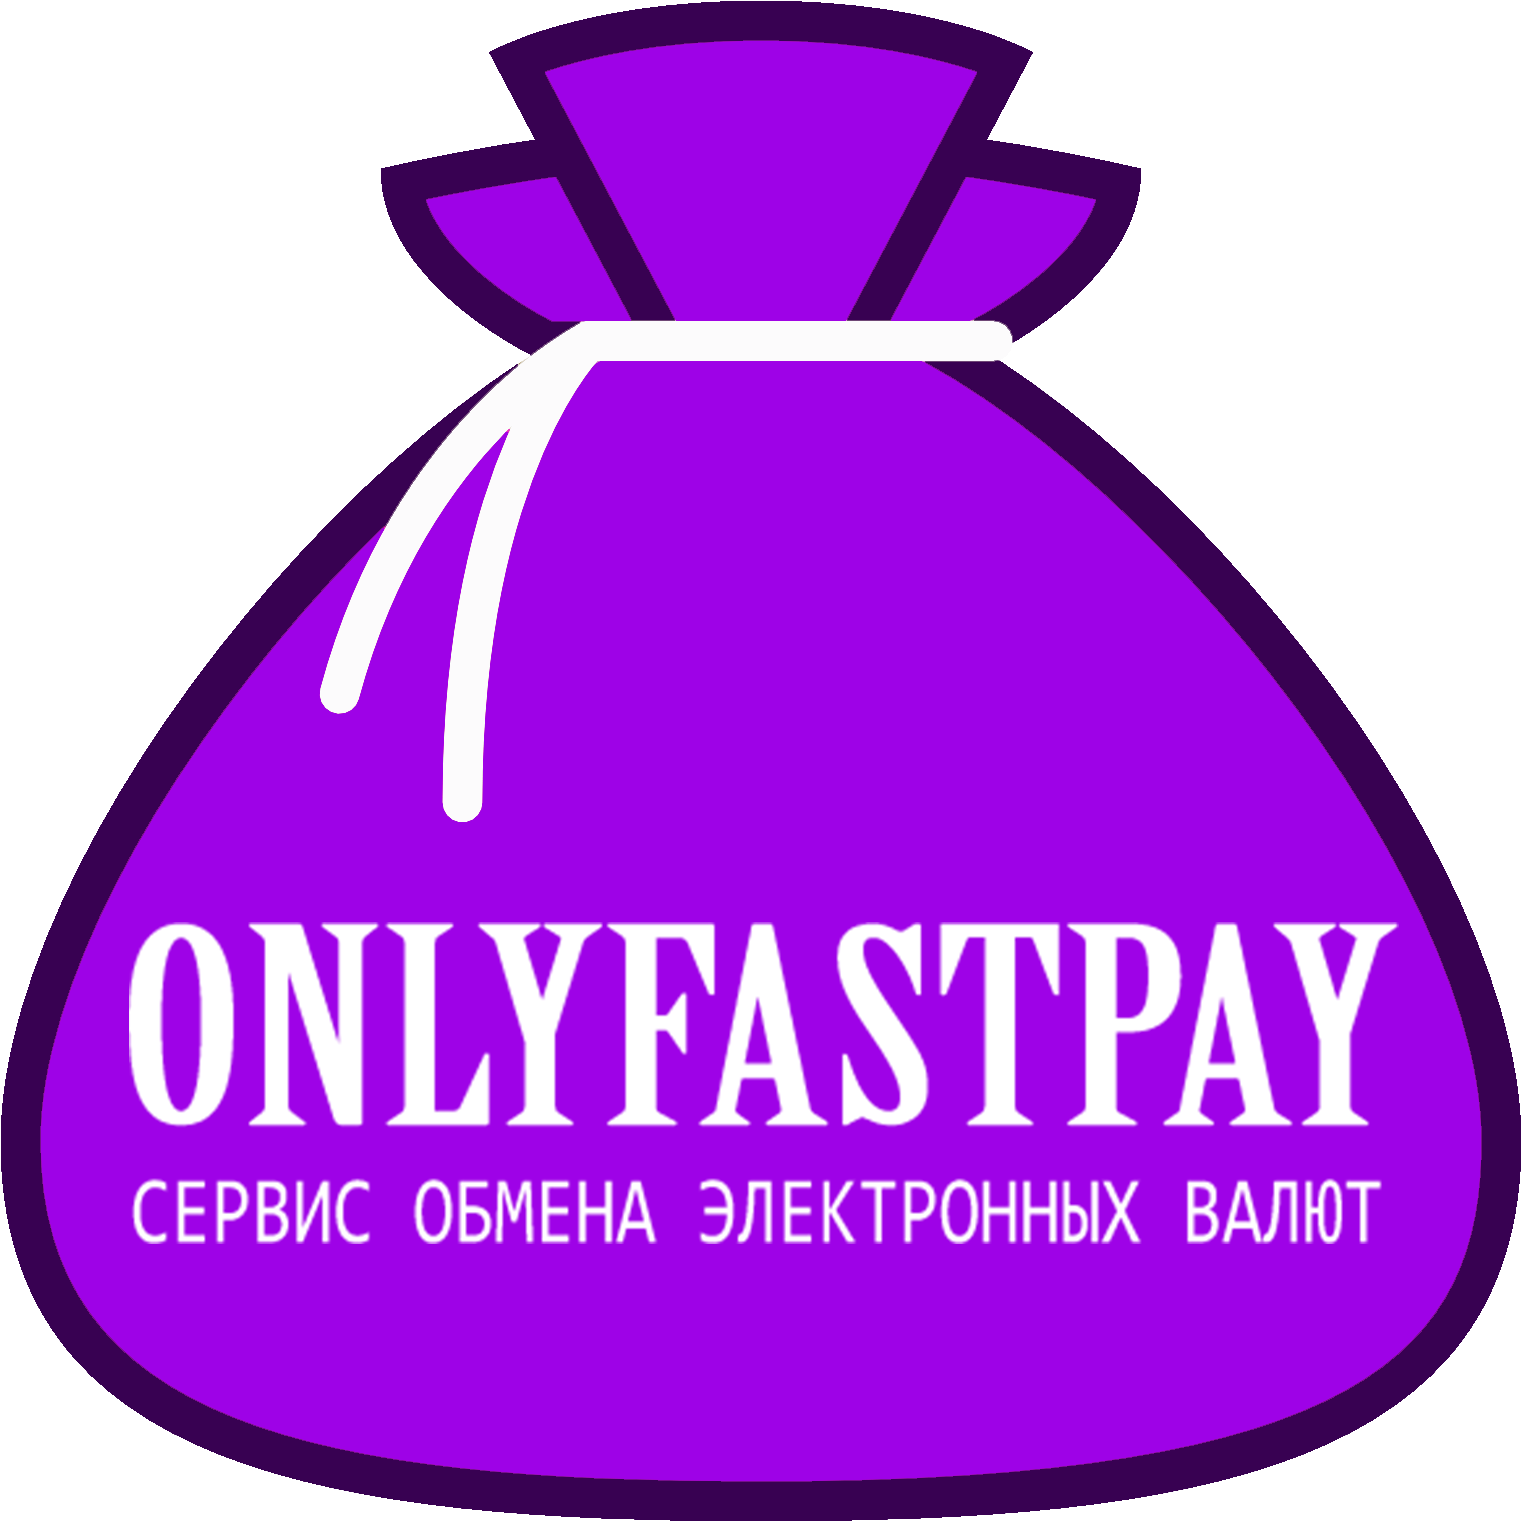 OnlyFastPay